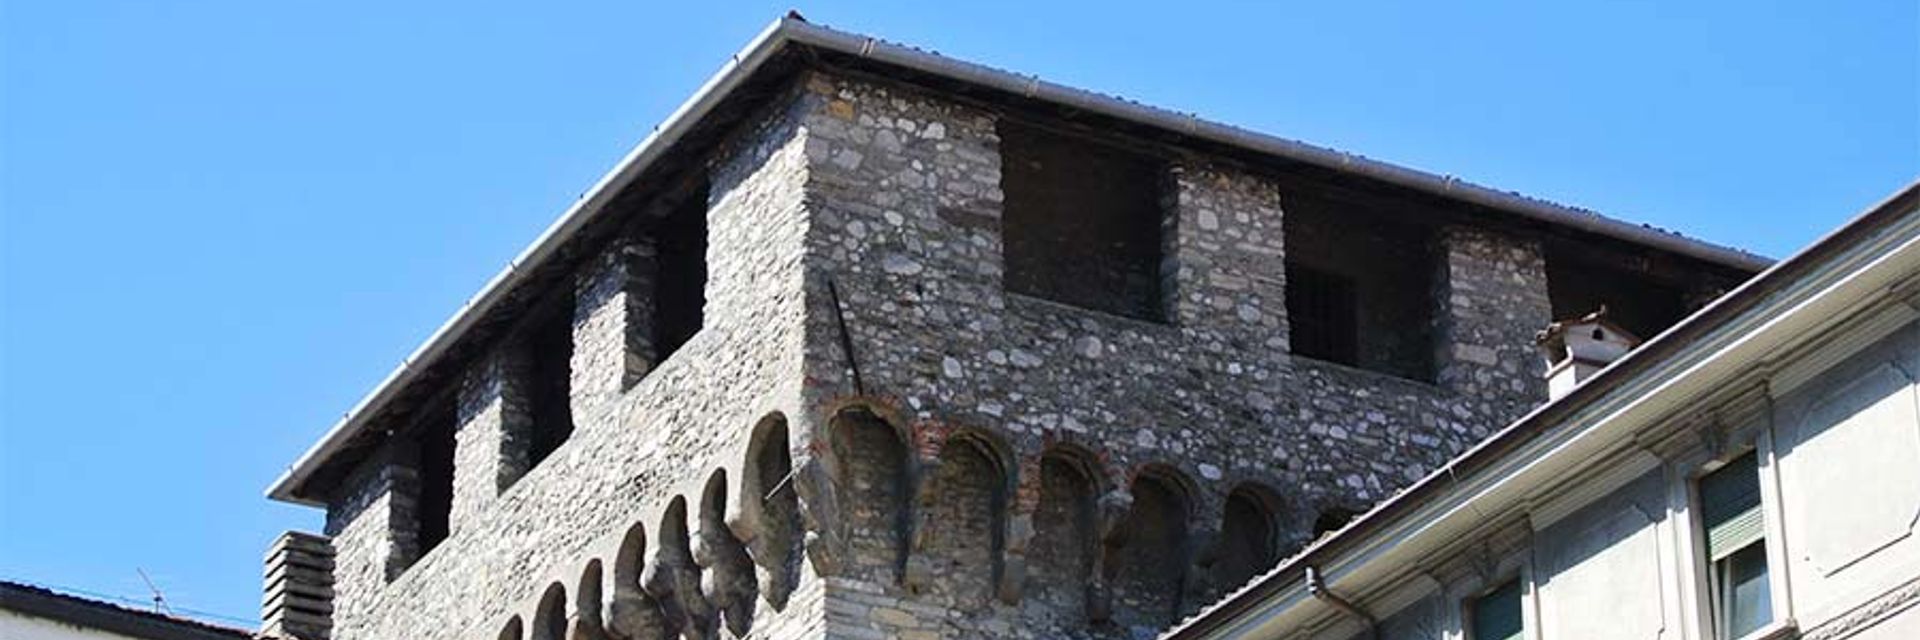 Viscontea-Turm